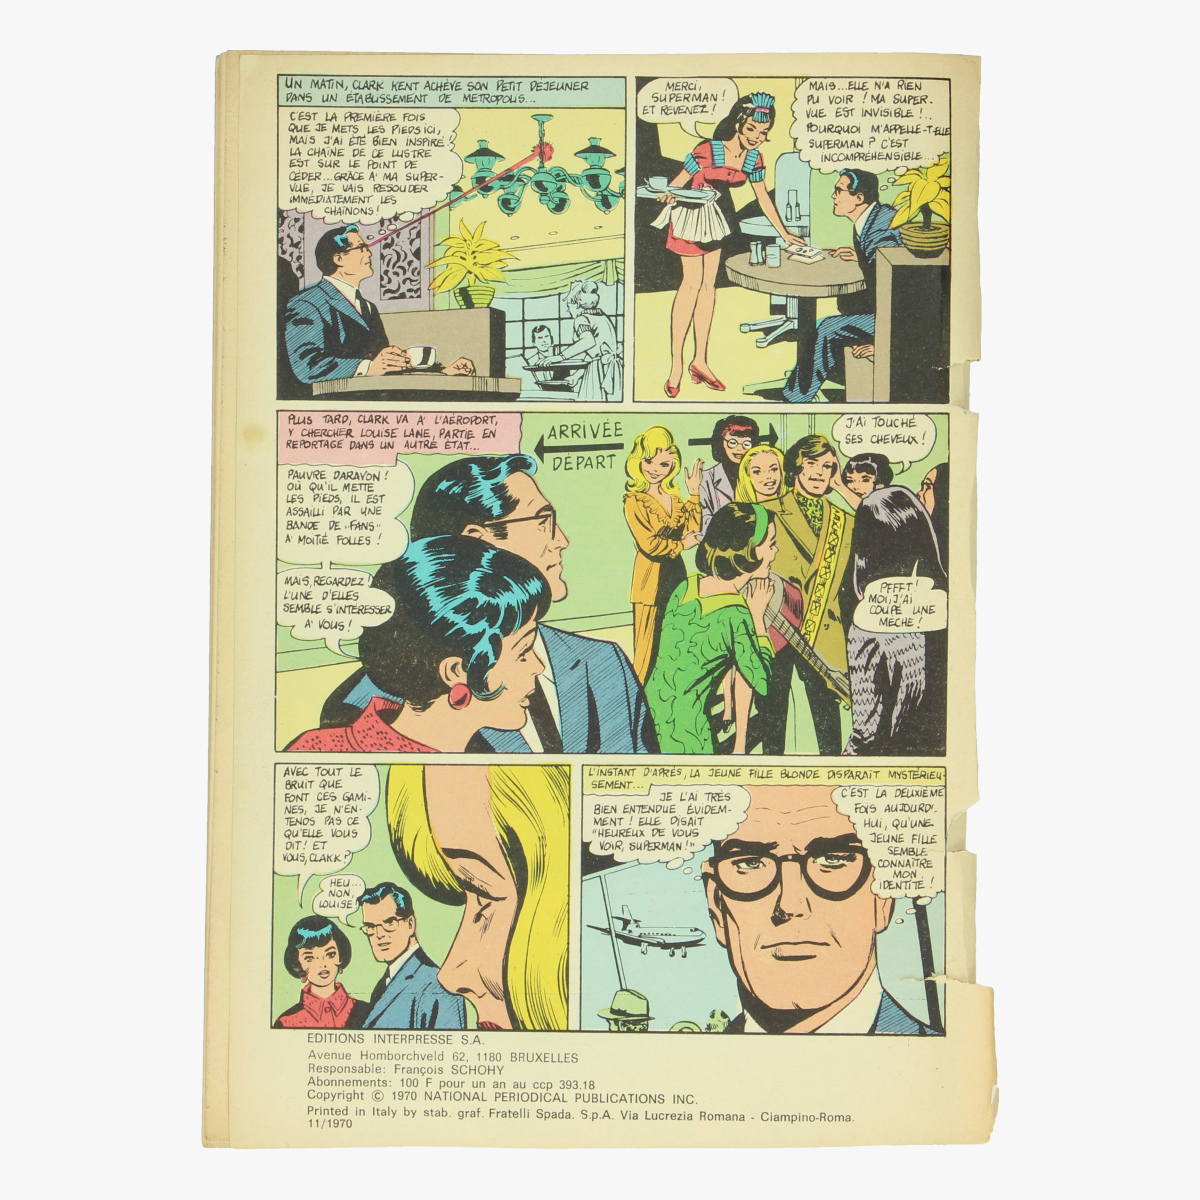 Afbeeldingen van Superman et Batman.1970 Nr. 37 